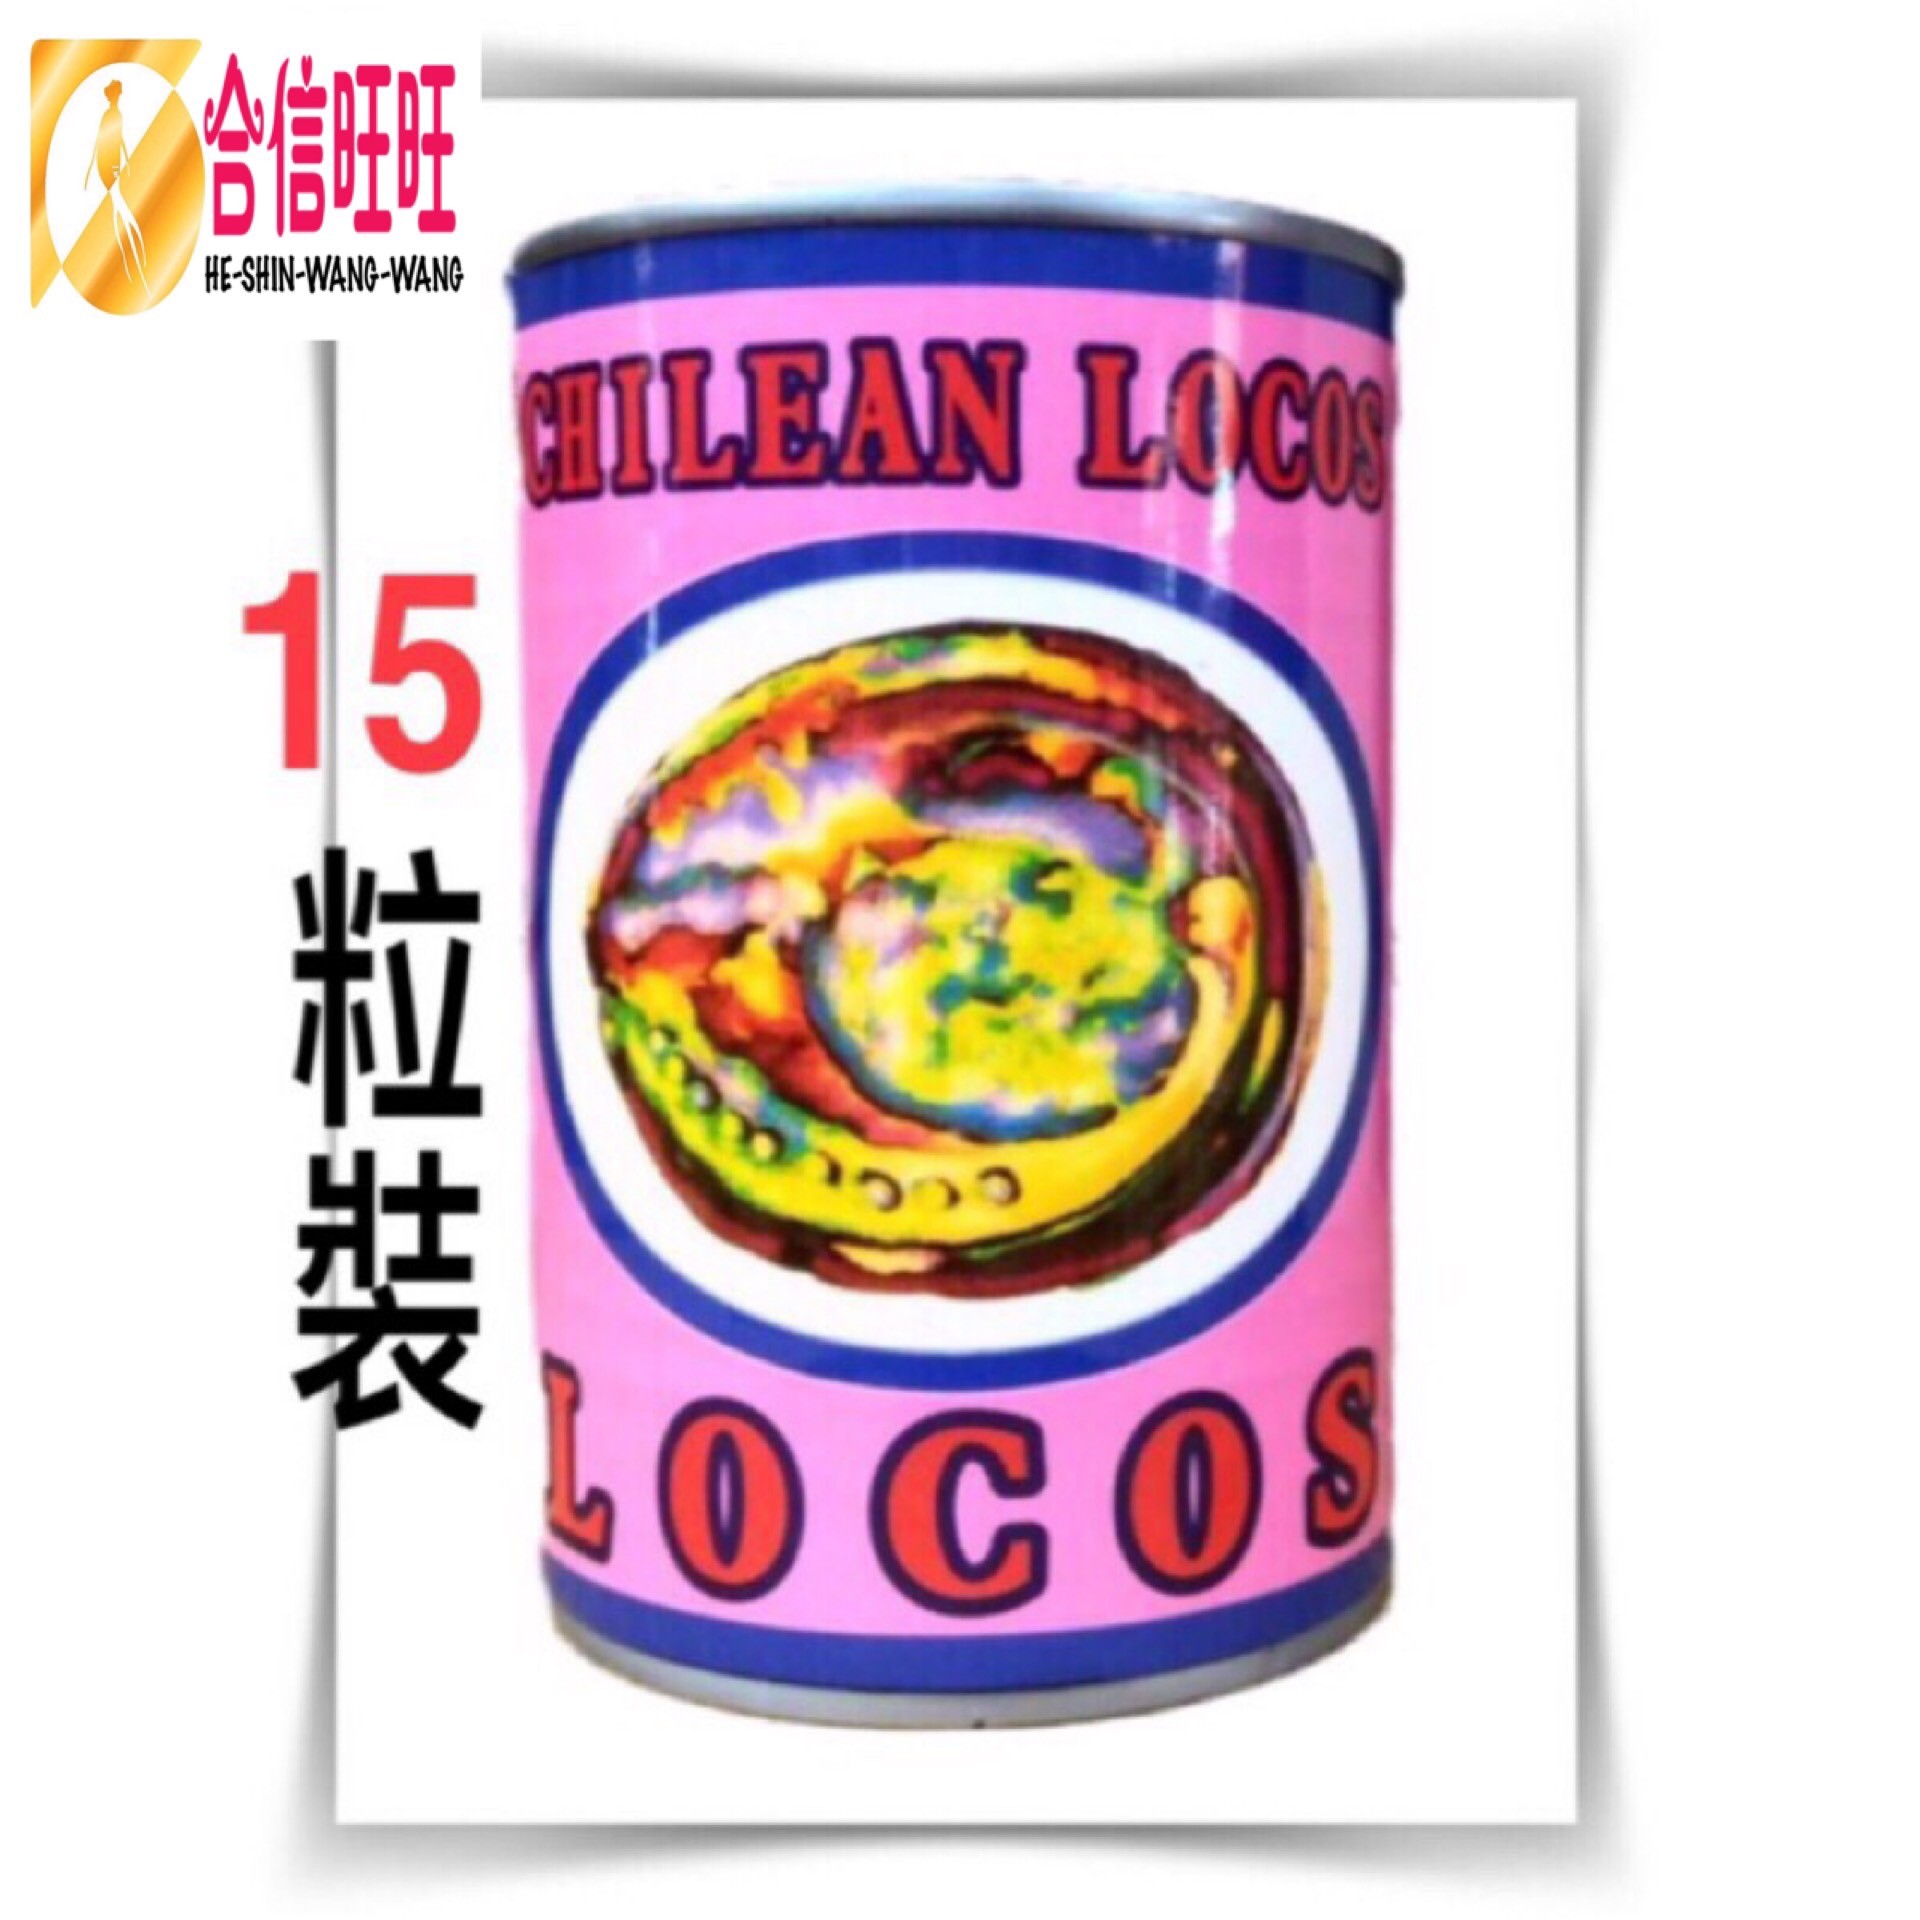 【晶鑽牌】LOCOS鮑魚(鮑貝)15粒罐頭